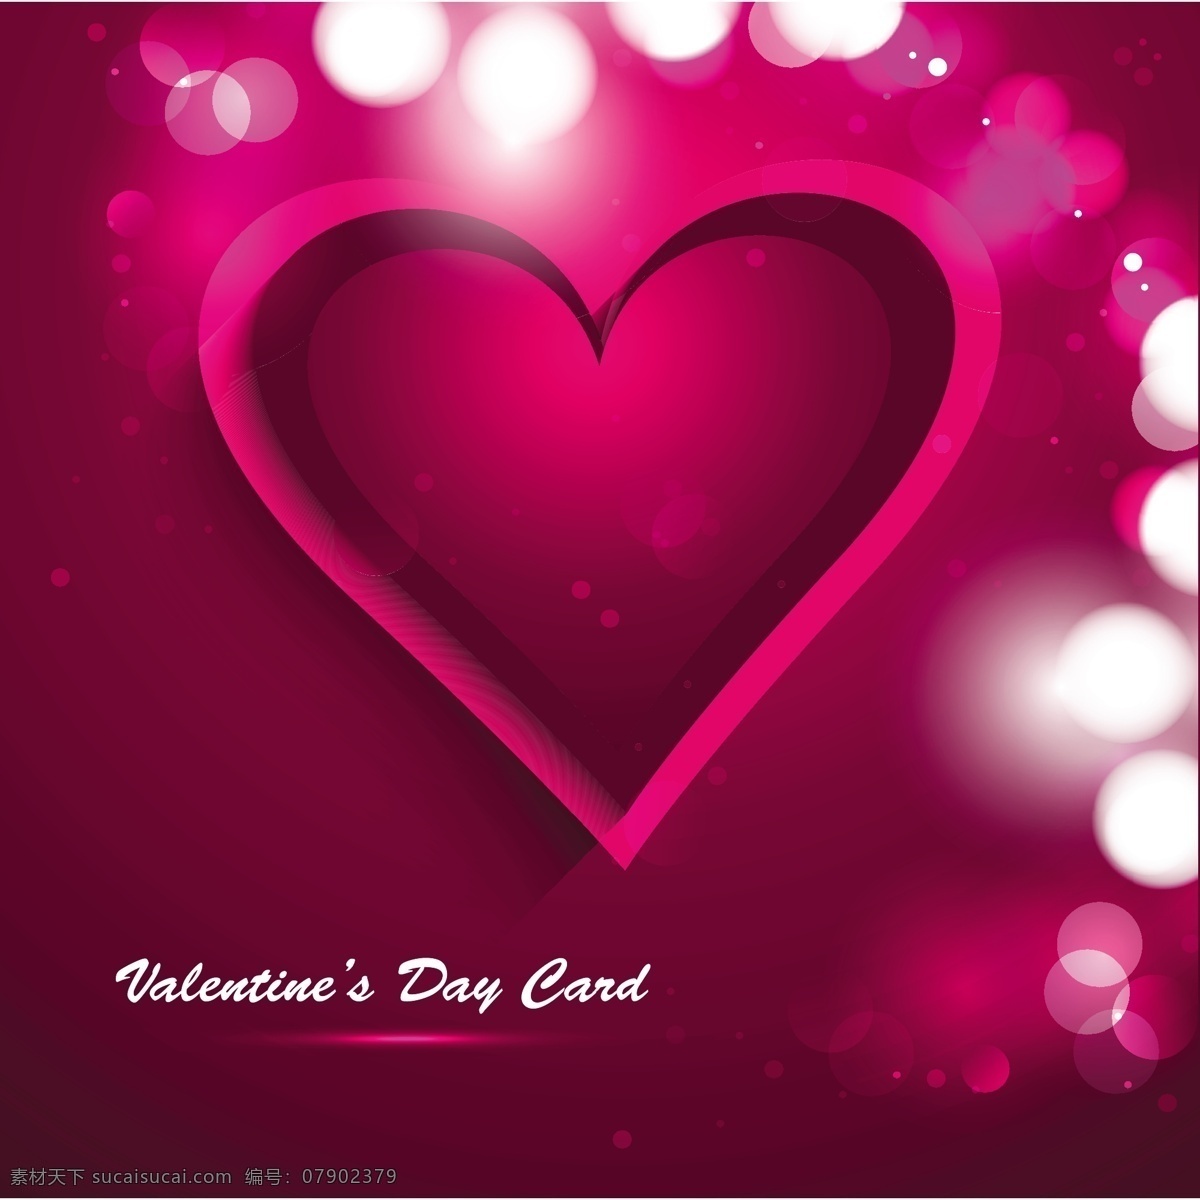 粉色 爱情 背景 心 抽象的爱 卡 情人节 壁纸 庆祝 情侣 情人节的心 粉红色的背景 浪漫 庆祝爱的背景 美丽的问候